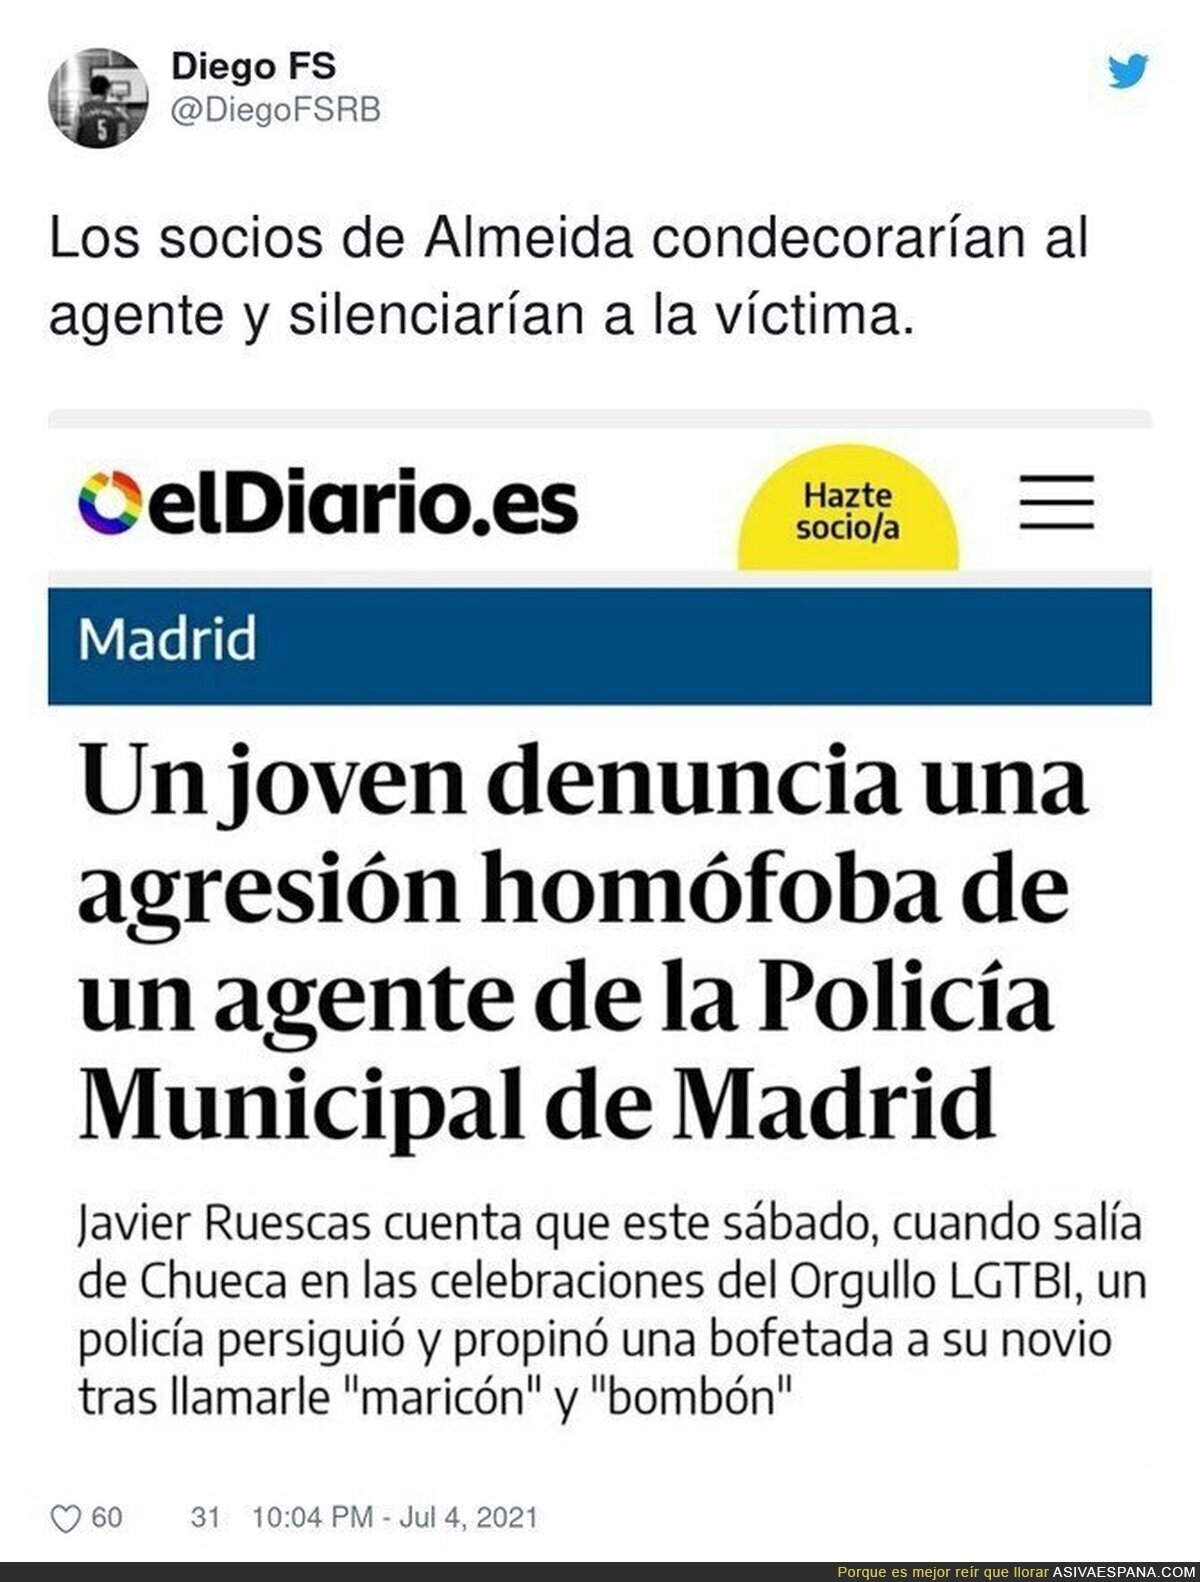 Madrid es peligrosa en las fiestas del Orgullo